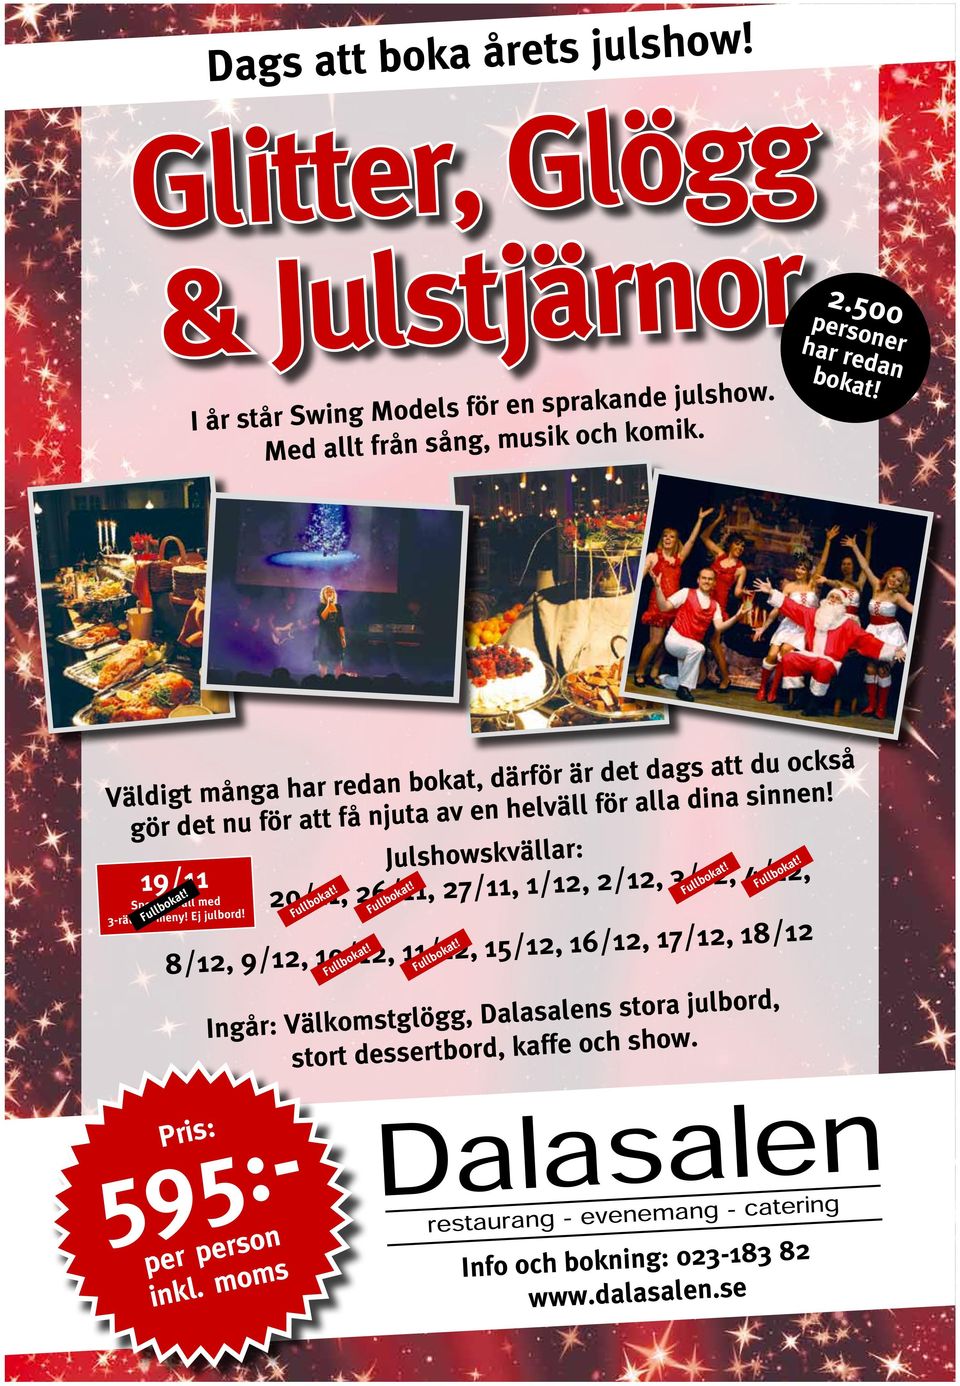 Fullbokat! Julshowskvällar: 20/11, 26/11, 27/11, 1/12, 2/12, 3/12, 4/12, Fullbokat! 8/12, 9/12, 10/12, 11/12, 15/12, 16/12, 17/12, 18/12 Fullbokat! Fullbokat! Fullbokat! Fullbokat! Ingår: Välkomstglögg, Dalasalens stora julbord, stort dessertbord, kaffe och show.